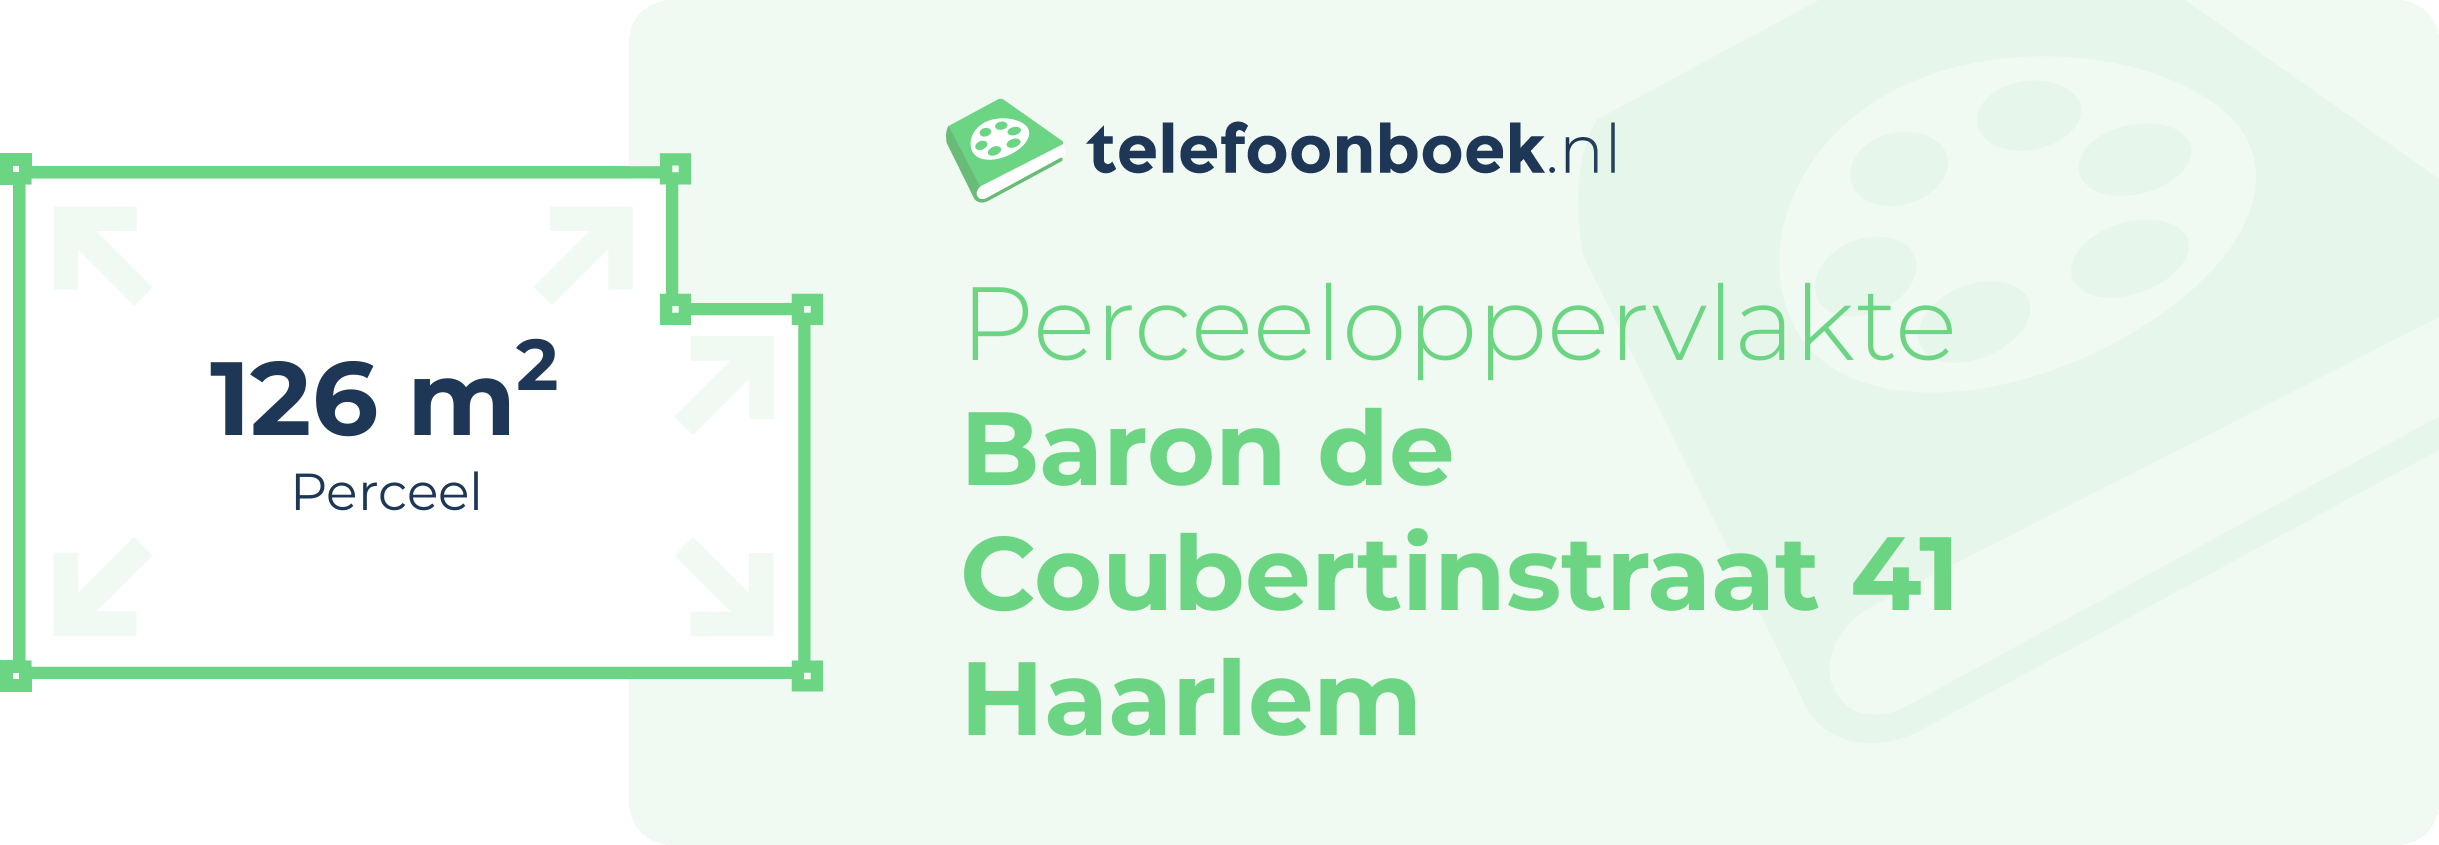 Perceeloppervlakte Baron De Coubertinstraat 41 Haarlem